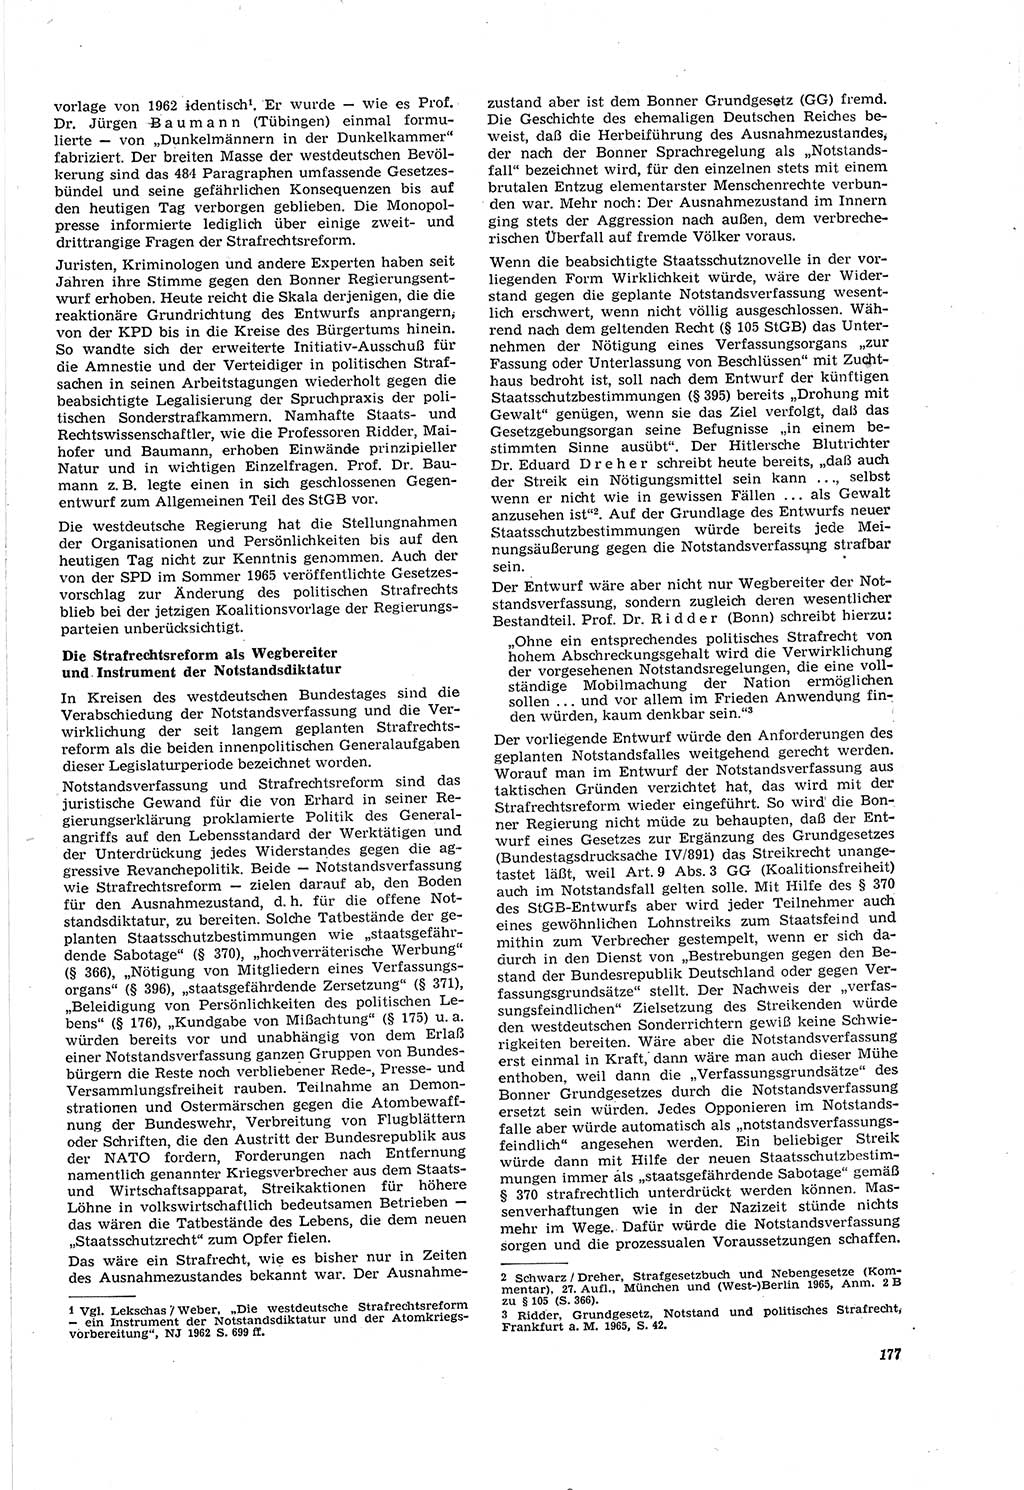 Neue Justiz (NJ), Zeitschrift für Recht und Rechtswissenschaft [Deutsche Demokratische Republik (DDR)], 20. Jahrgang 1966, Seite 177 (NJ DDR 1966, S. 177)